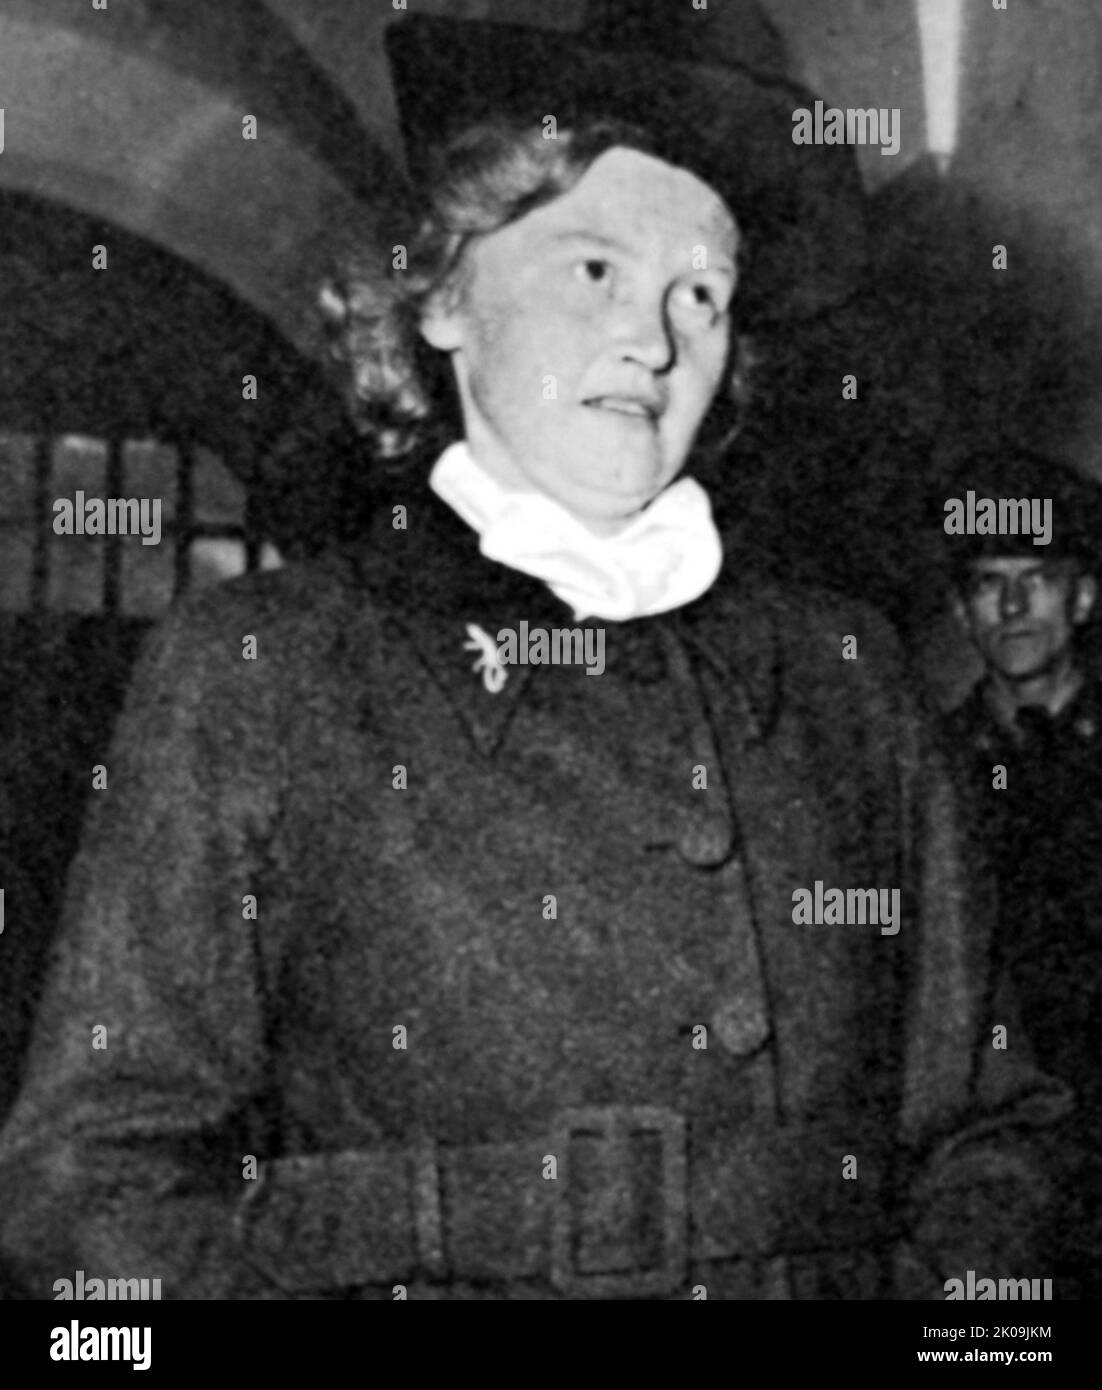 Ilse Koch (1906 - 1967) Nazi-Kriegsverbrecherin, die als Aufseherin in Nazi-Konzentrationslagern von ihrem Mann, Kommandant Karl-Otto Koch, geführt wurde. Koch arbeitete in Buchenwald (1937-1941) und Majdanek (1941-1943) und wurde berühmt für ihre sadistische, brutale Behandlung von Gefangenen. 1947 wurde sie eine der ersten prominenten Nazis, die vom US-Militär verurteilt wurde. Stockfoto